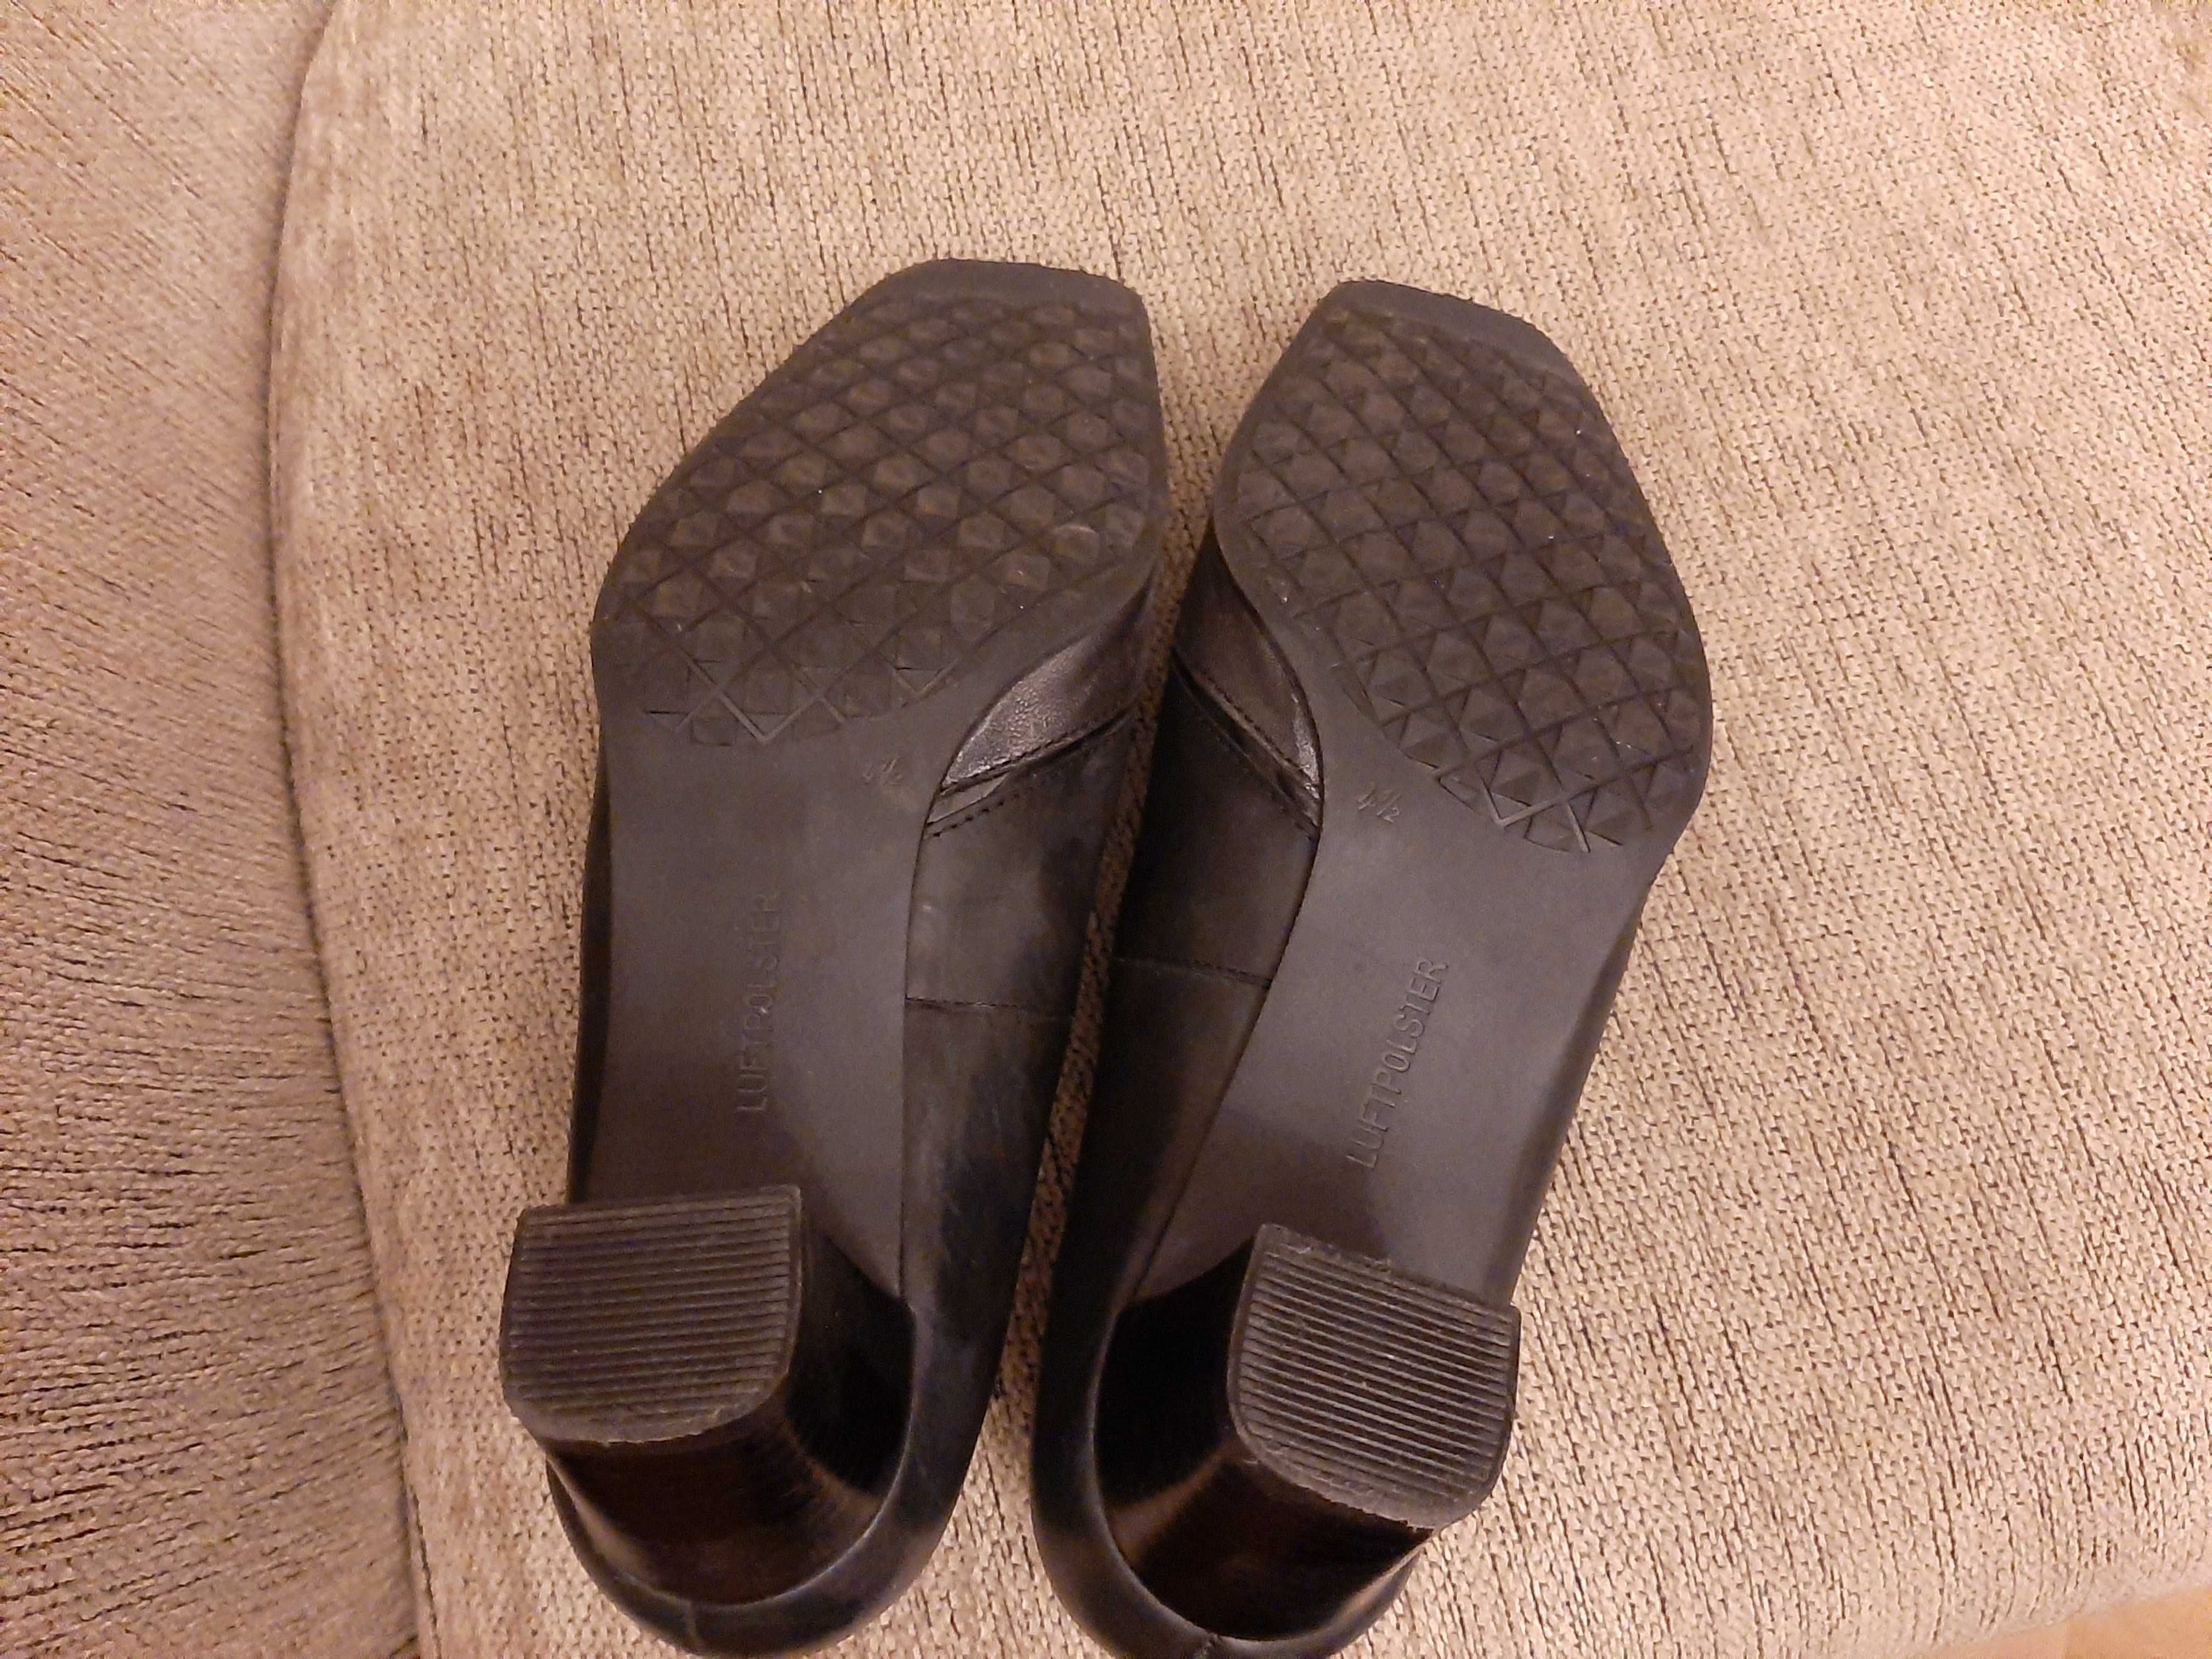 Pantofi din piele, negri, impecabili, Ara, numărul 4,5 (37)